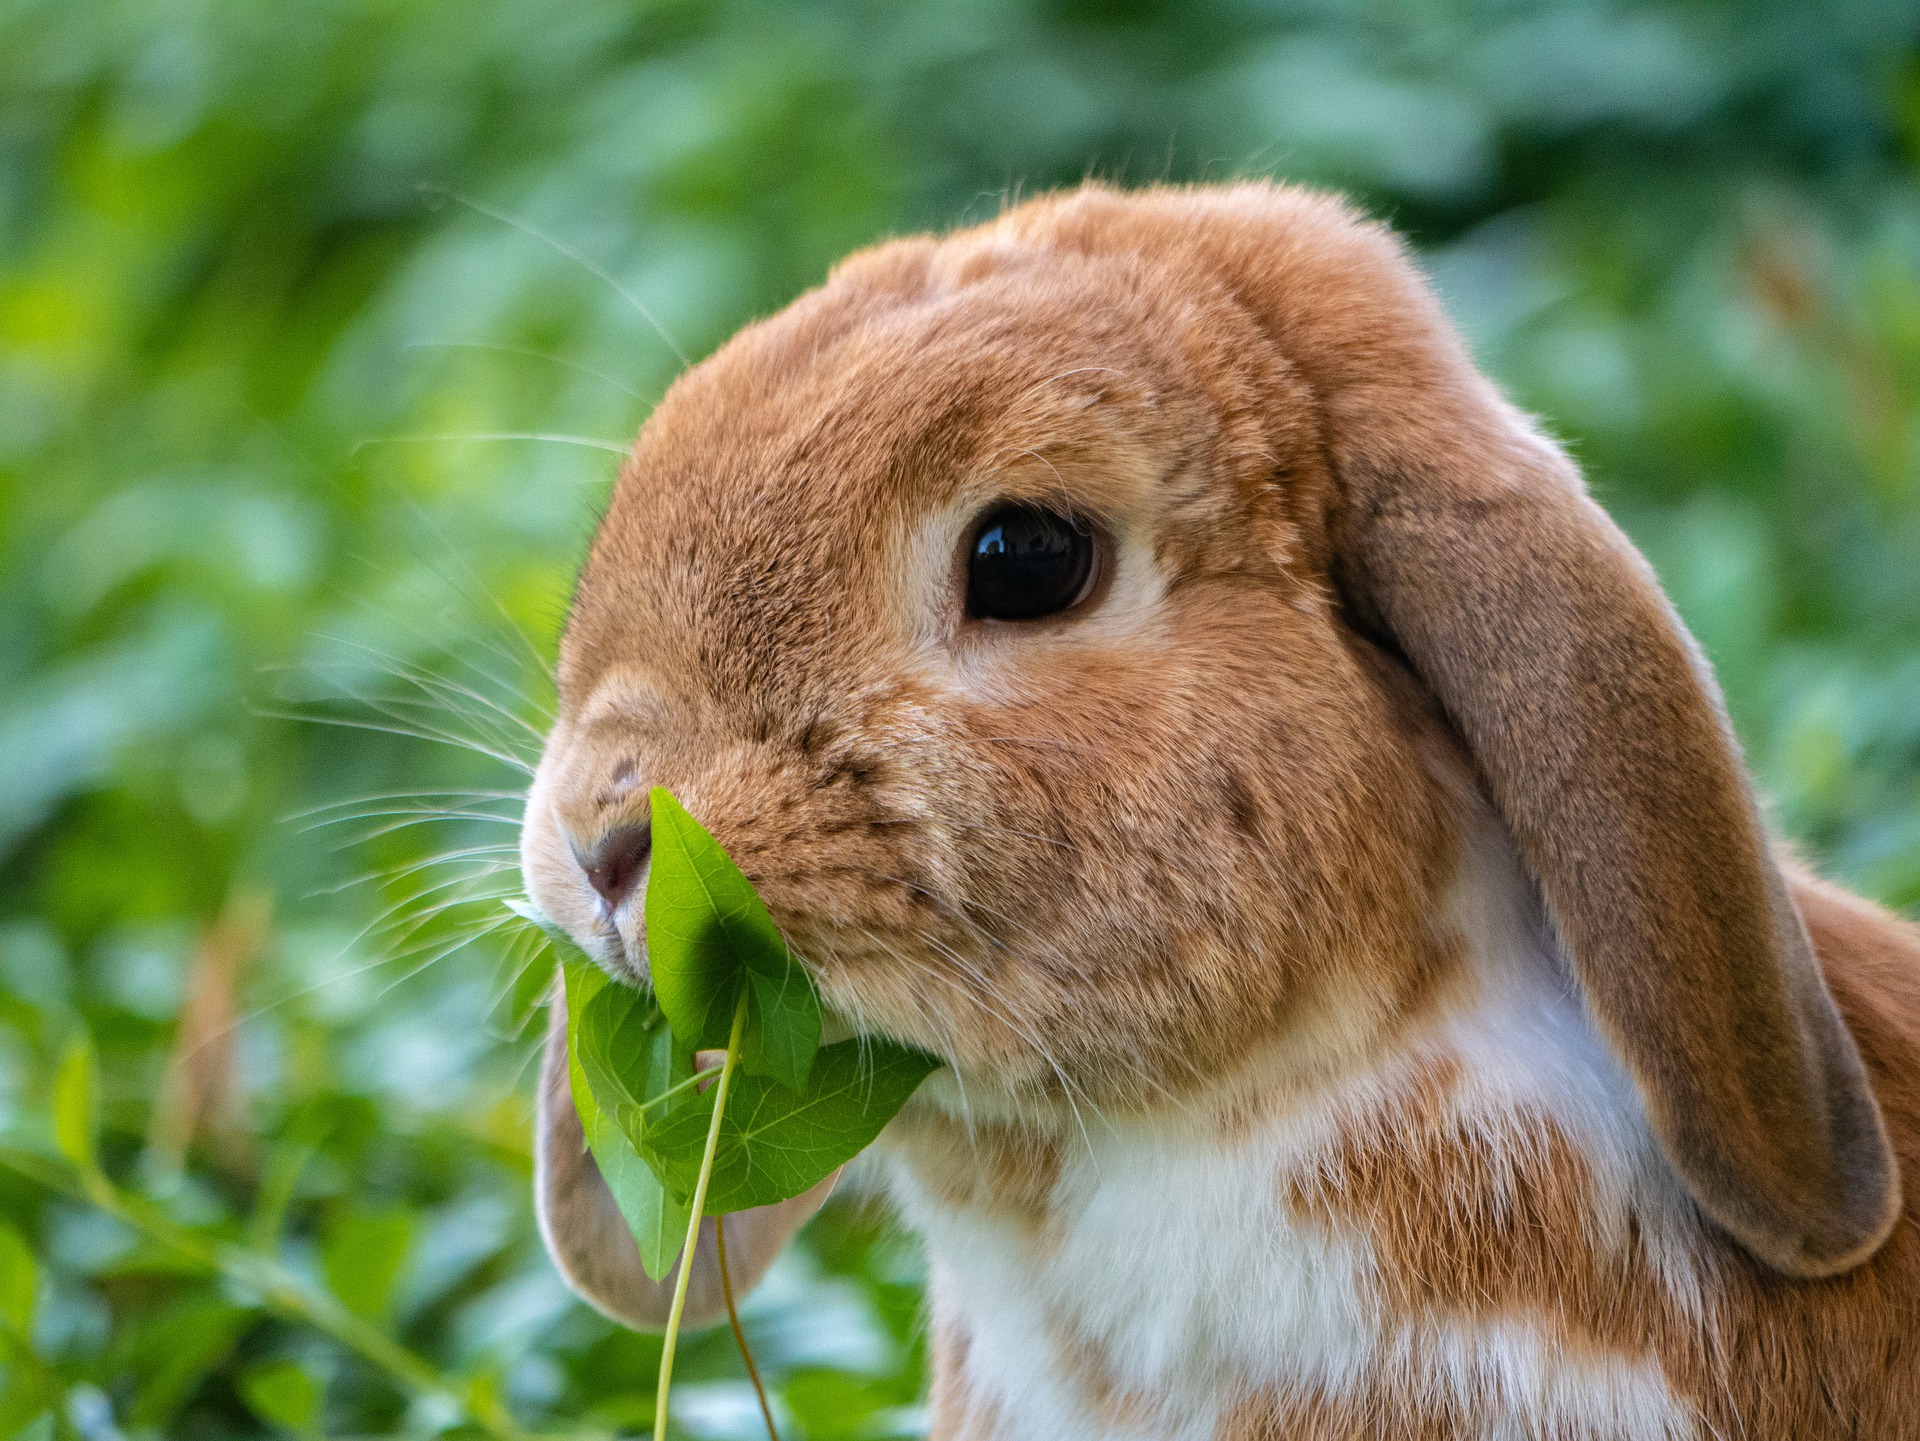 क्या खरगोश सलाद खा सकता है?